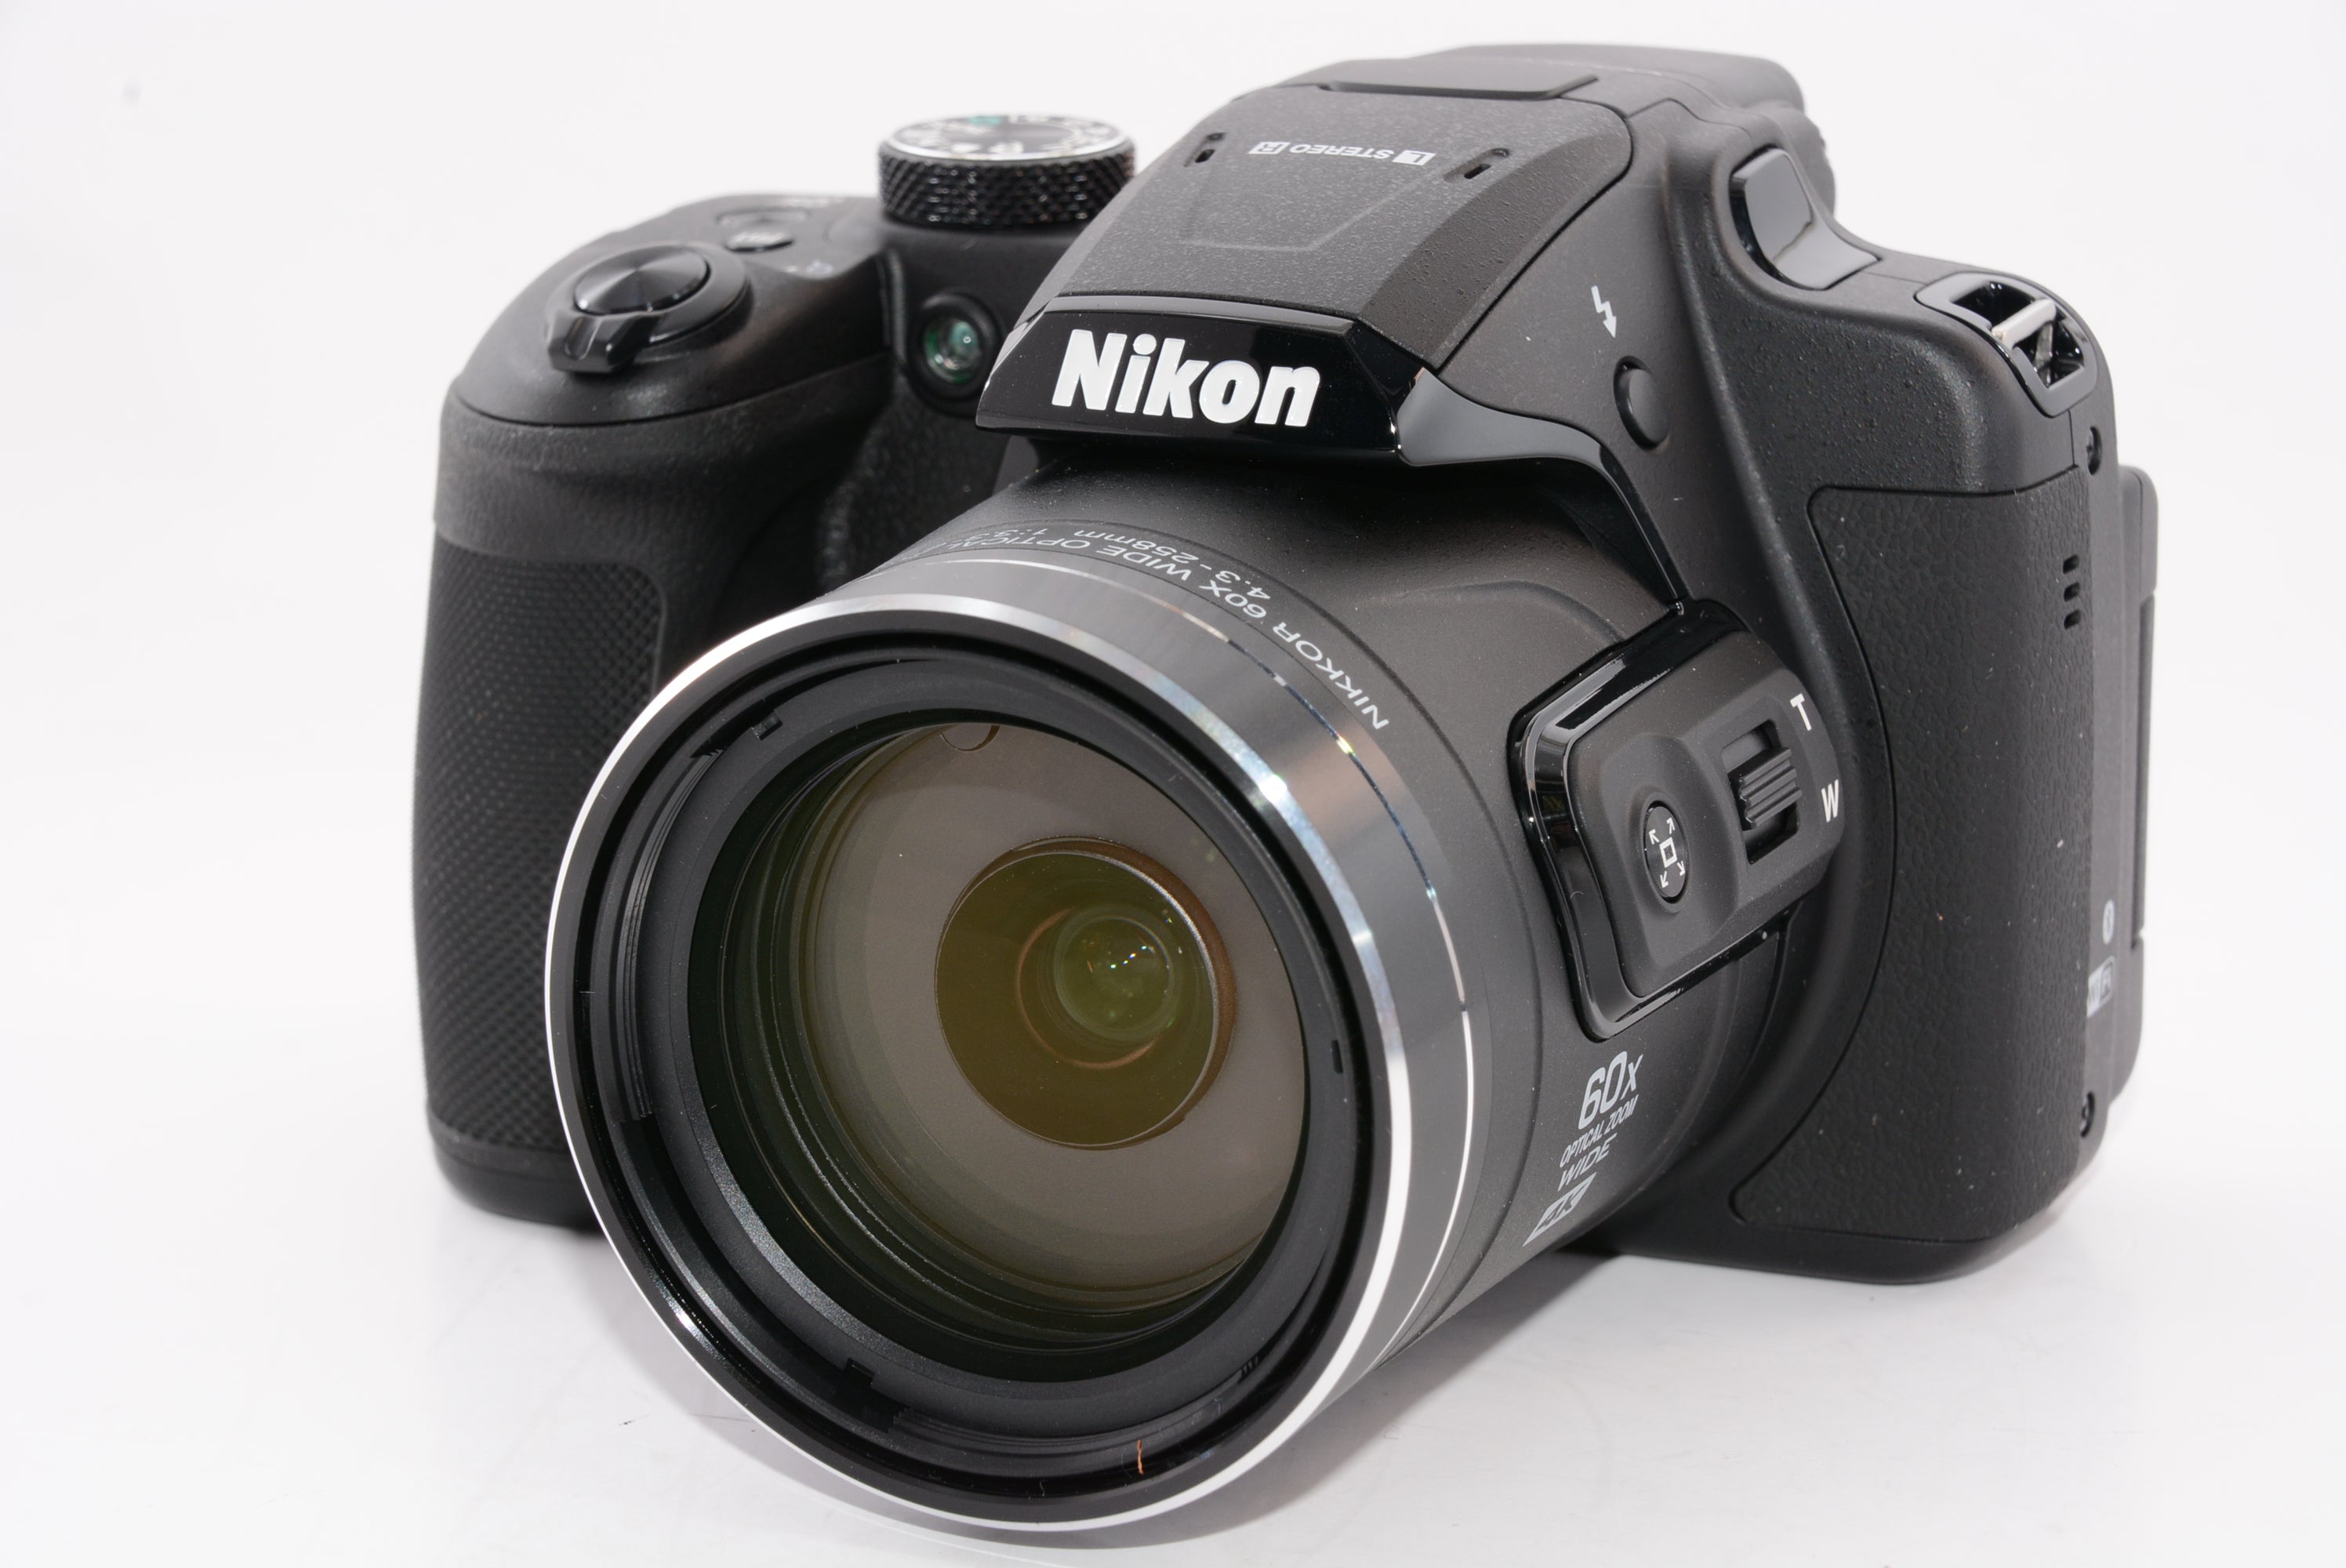 NikonデジタルカメラCOOLPIX B700 光学60倍ズーム2029万画素 - デジタルカメラ